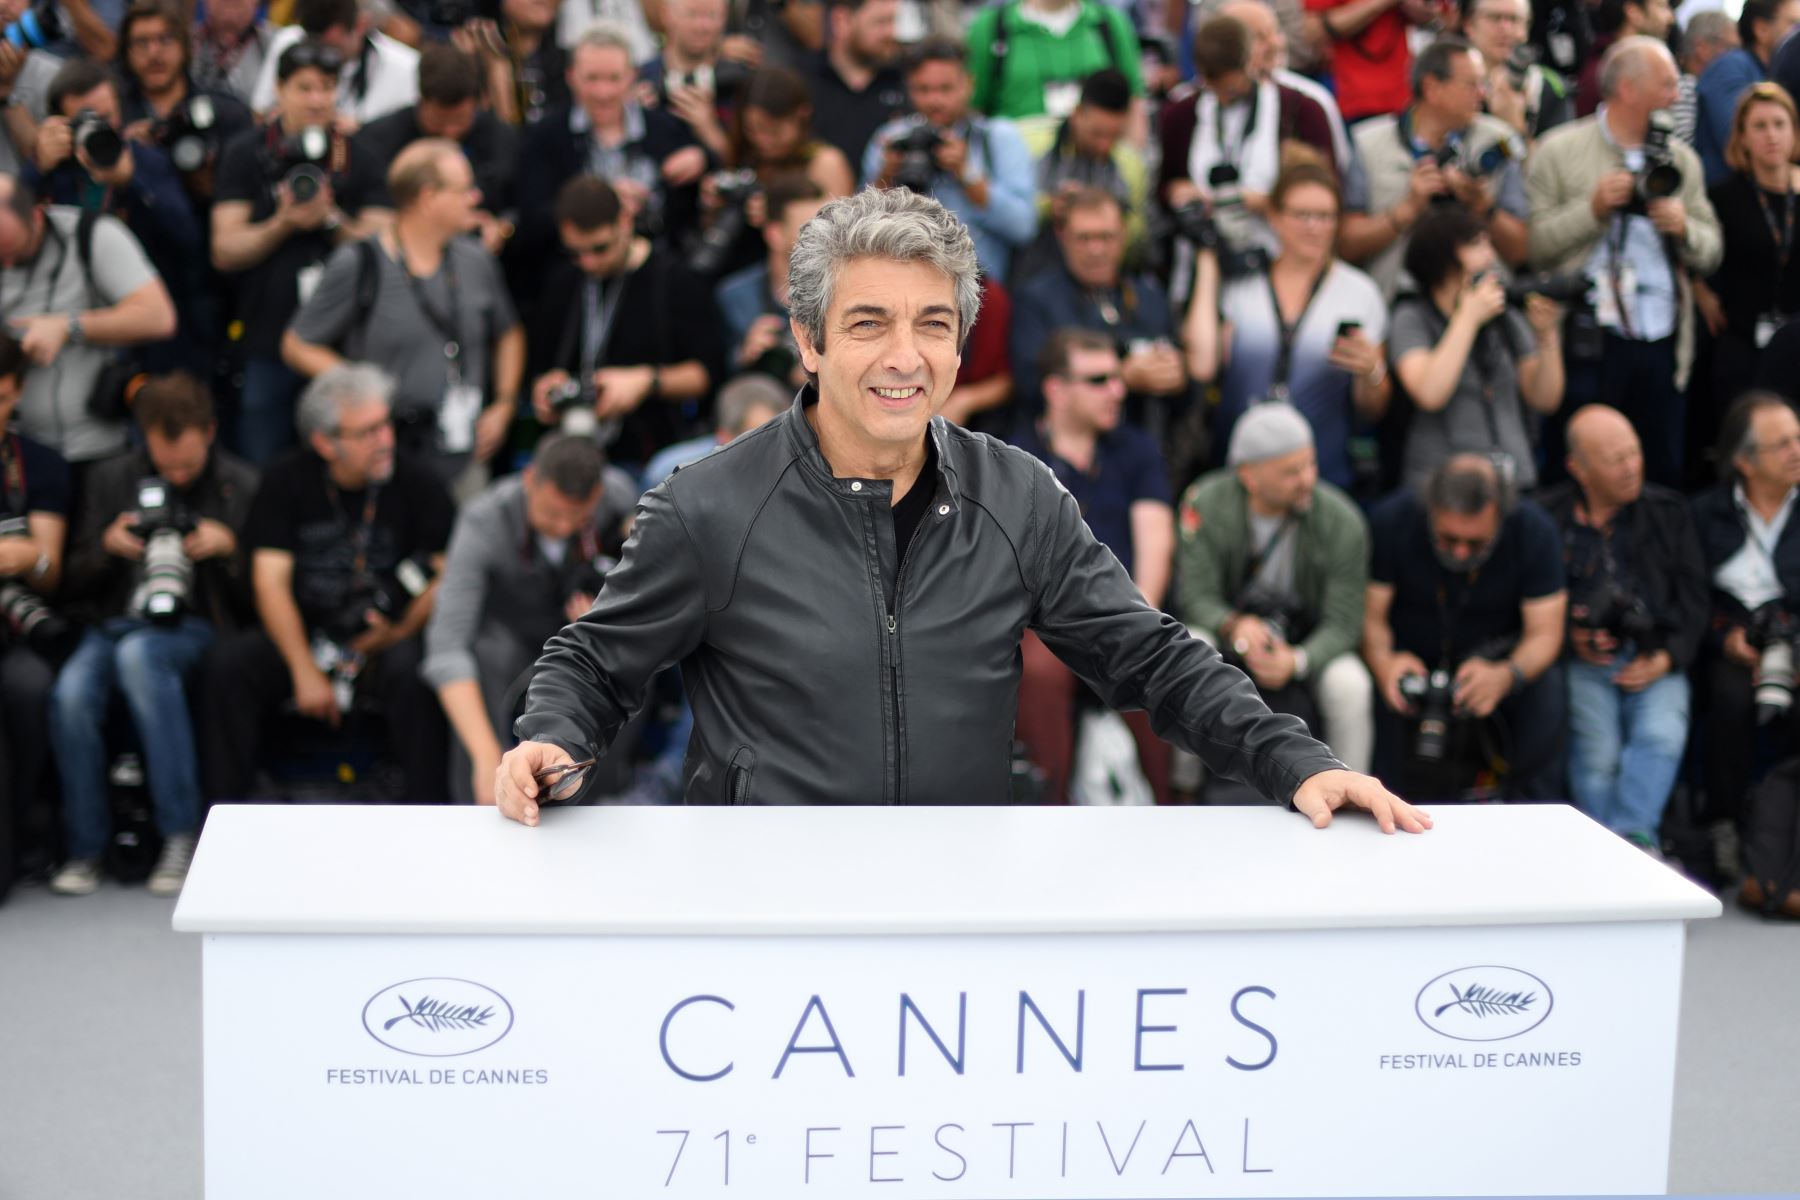 El actor argentino Ricardo Darin posa el 9 de mayo de 2018 durante una sesión de fotos para la película "Todos Lo Saben (Todos sabe)" en la 71 edición del Festival de Cannes en Cannes, sur de Francia.
Foto: AFP